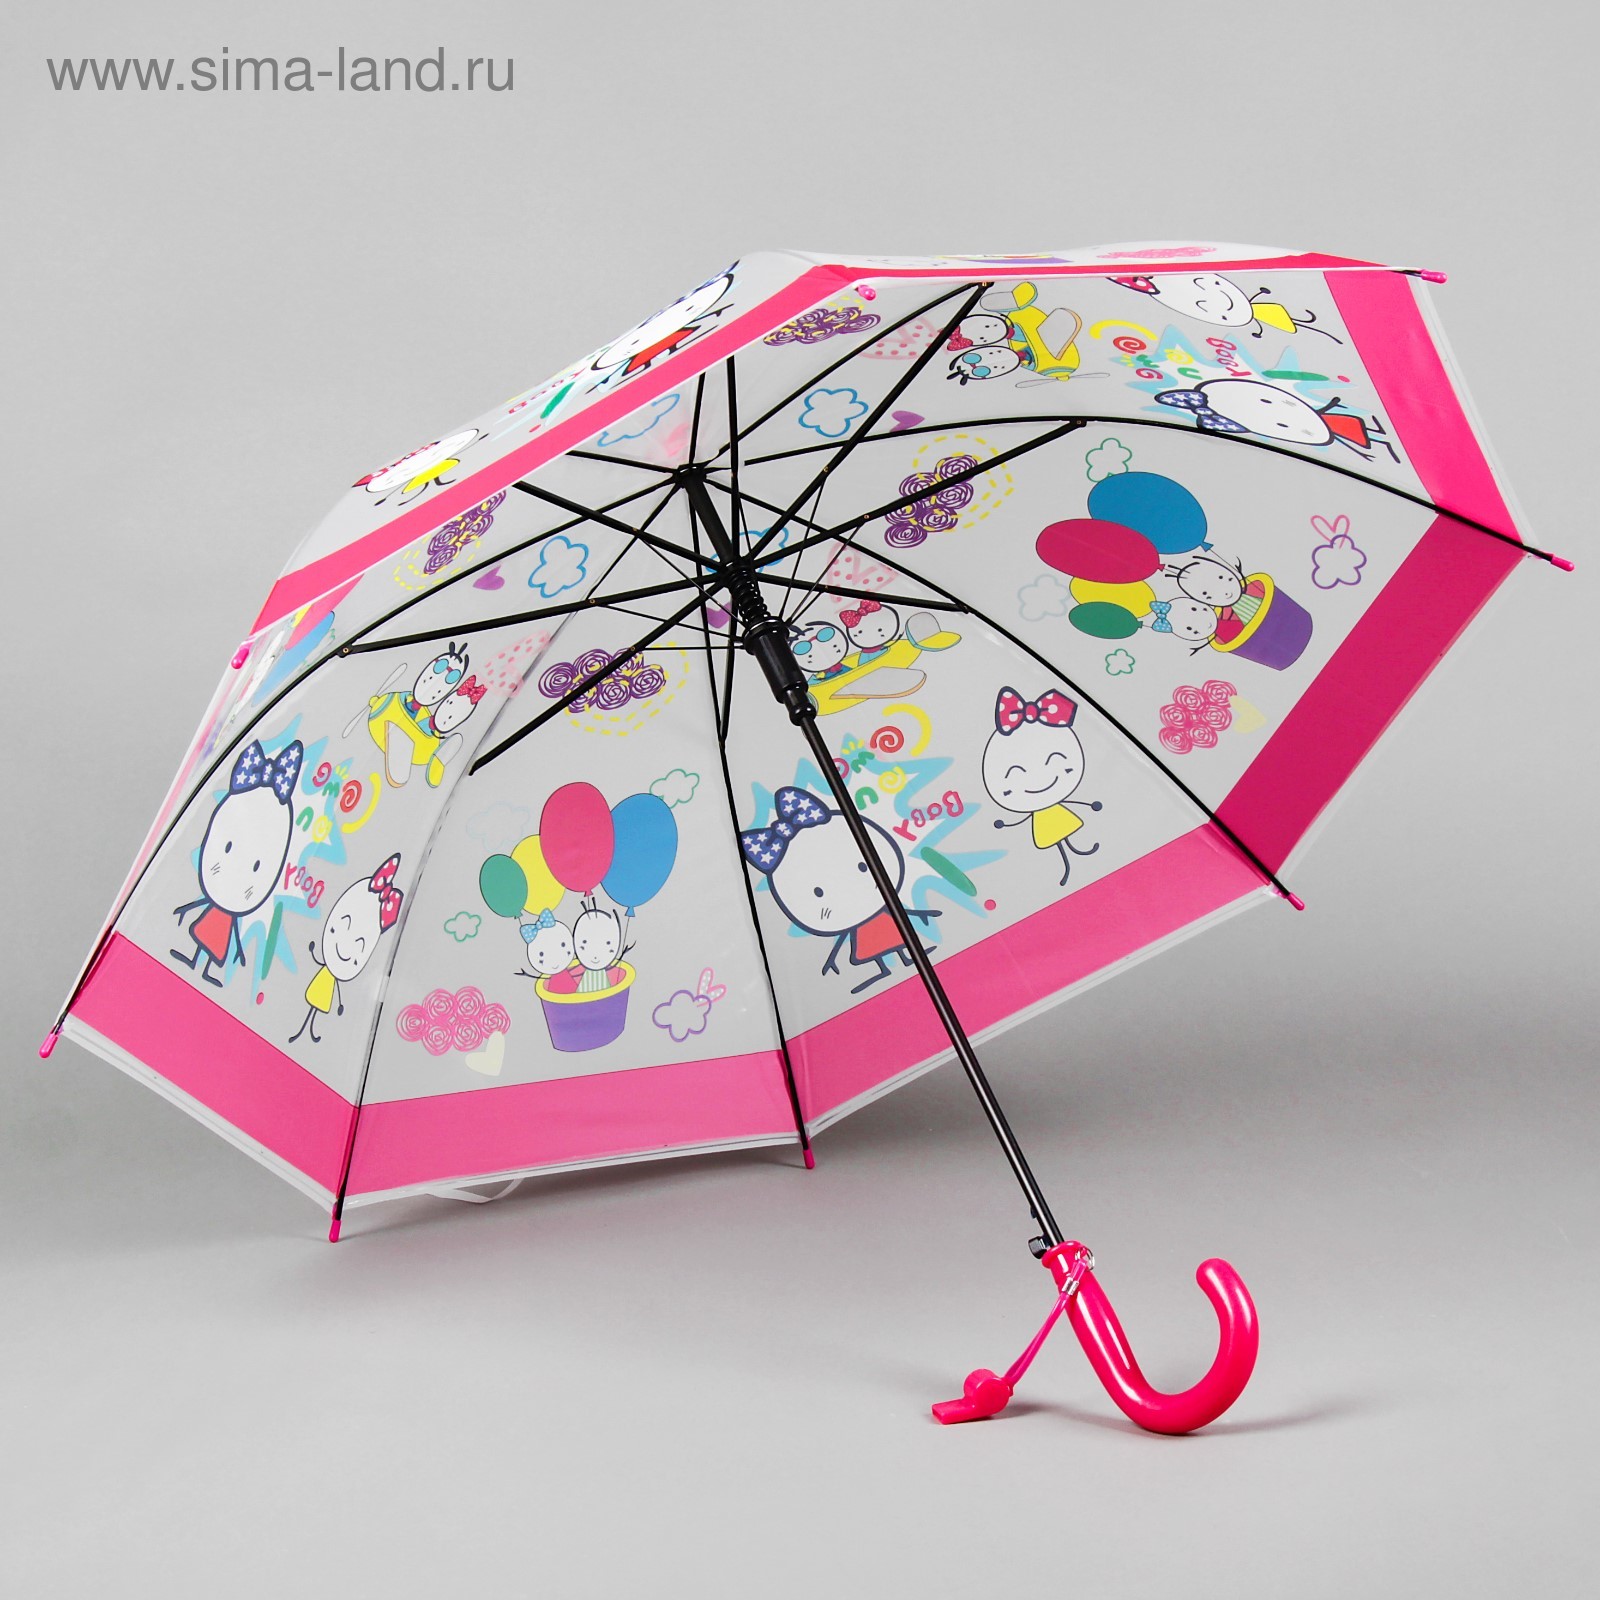 Игрушечный зонтик